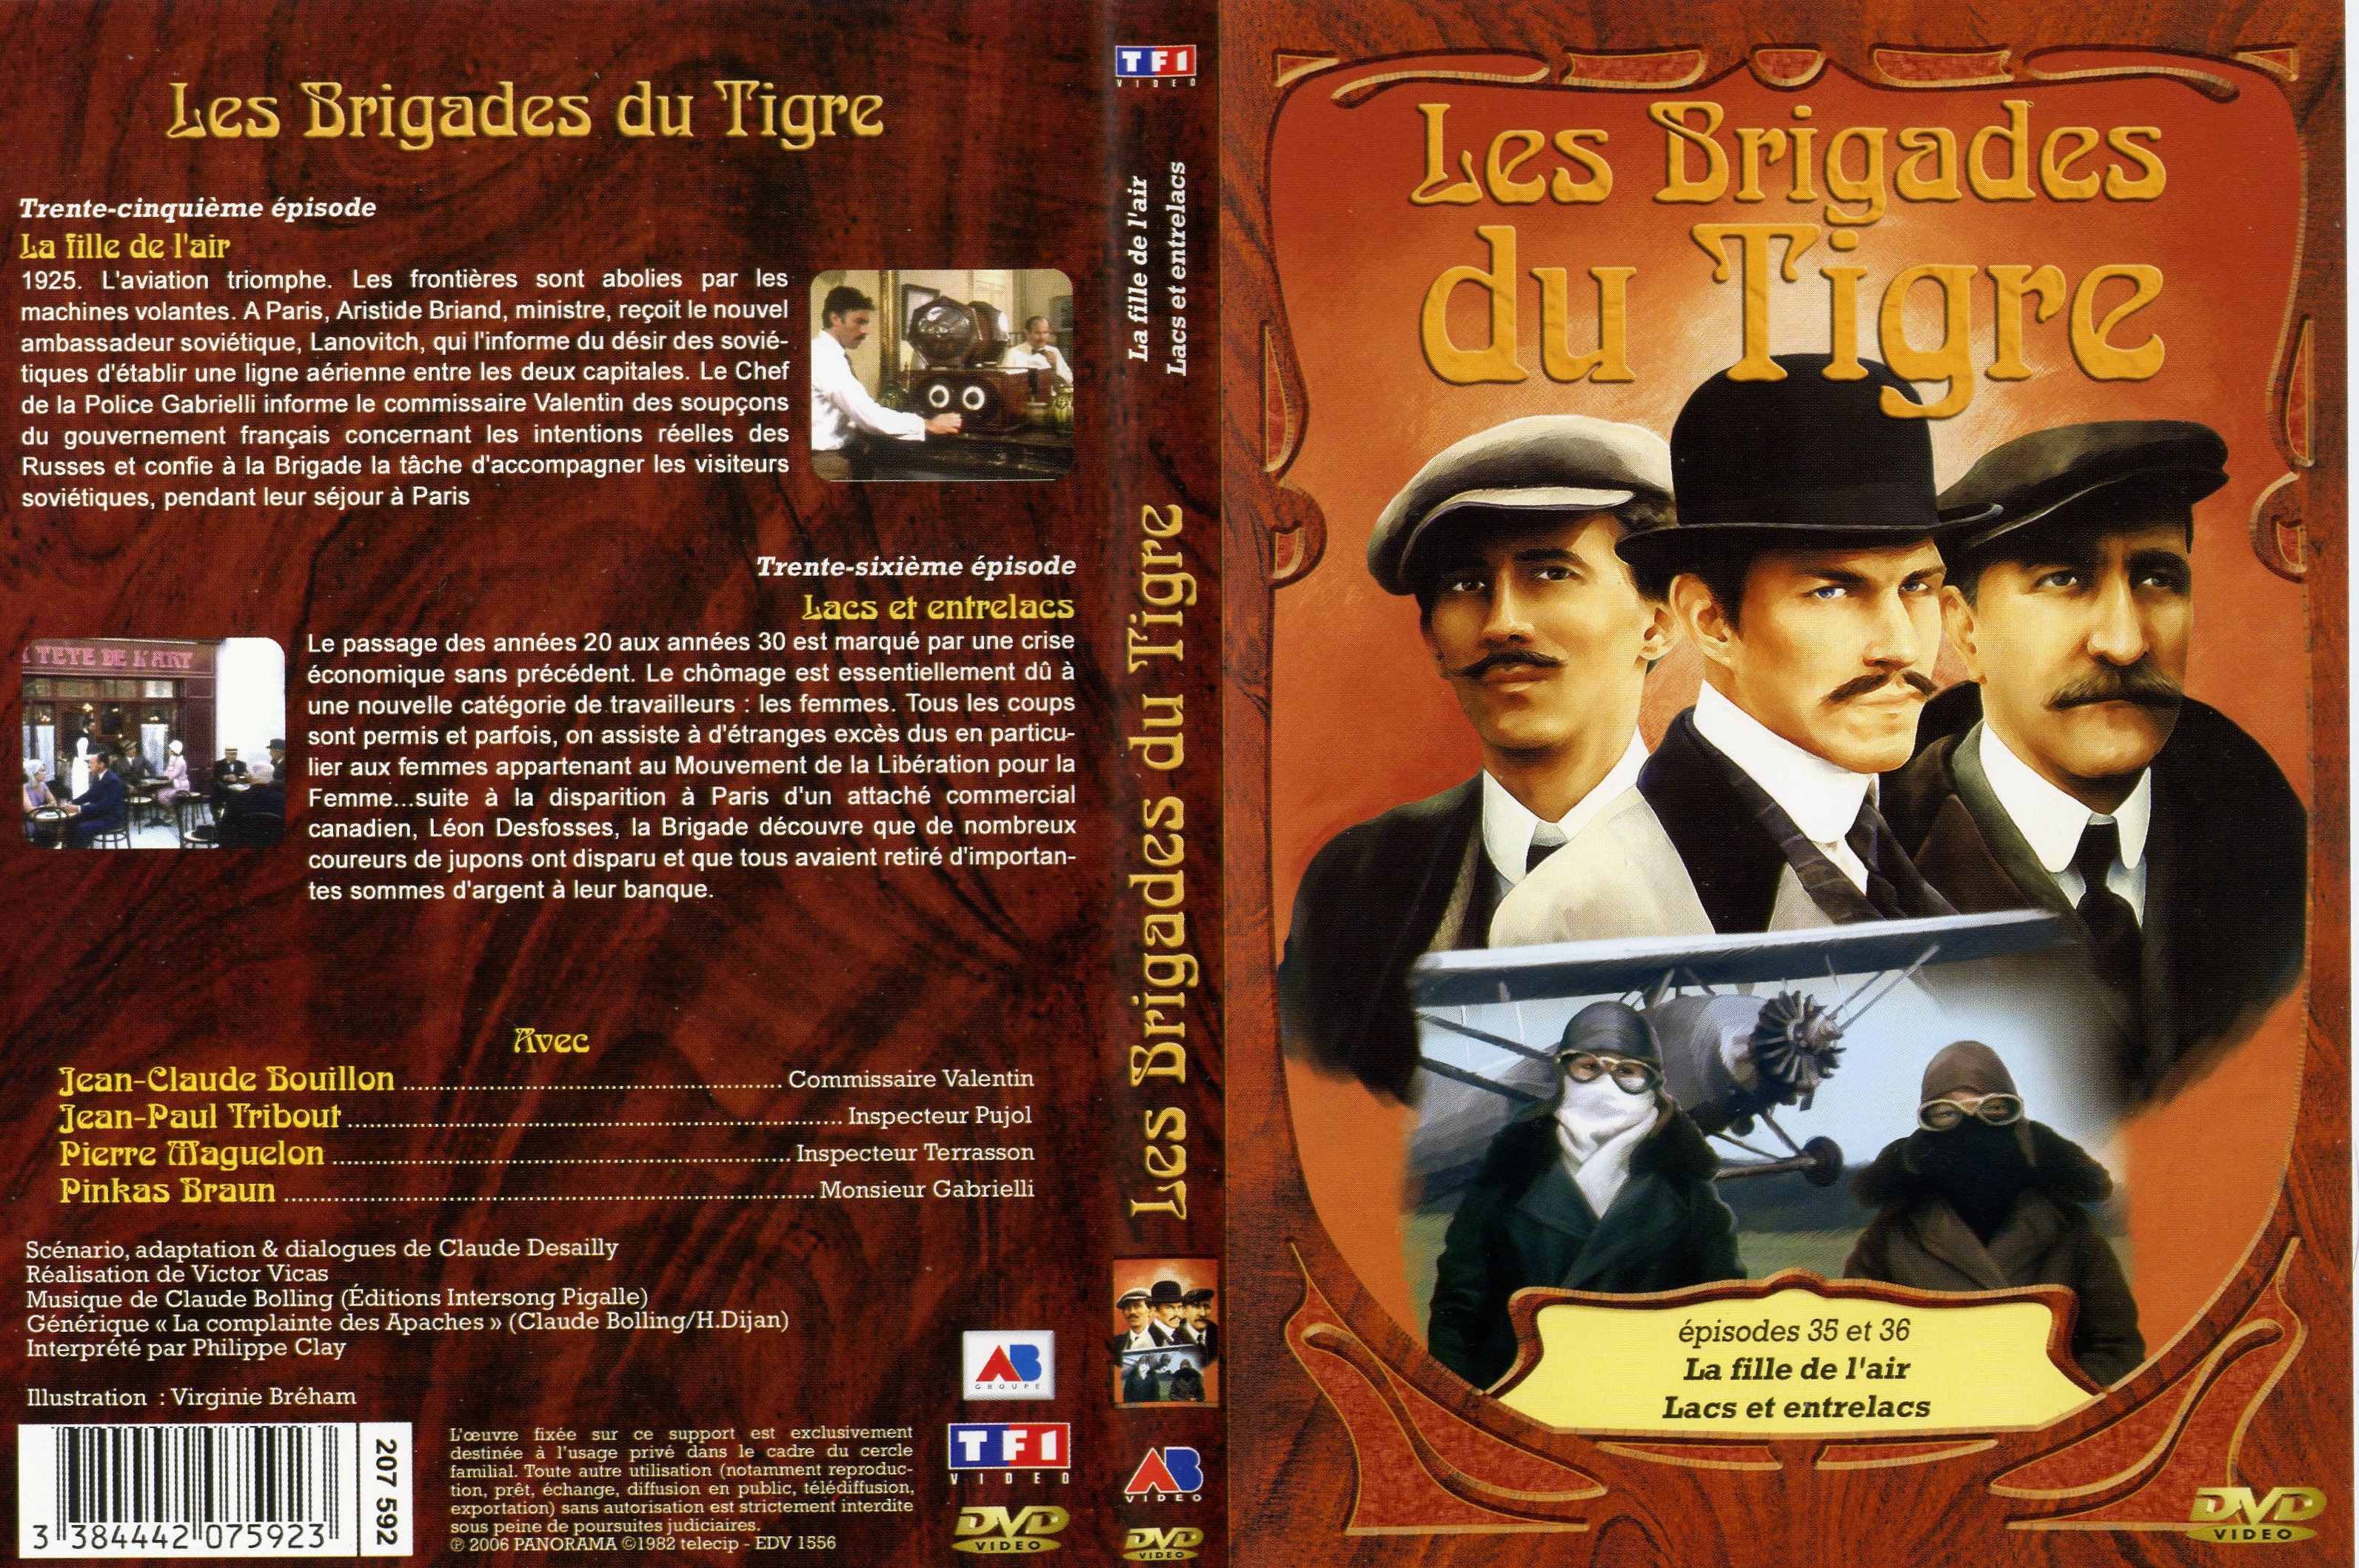 Jaquette DVD Les brigades du tigre vol 18